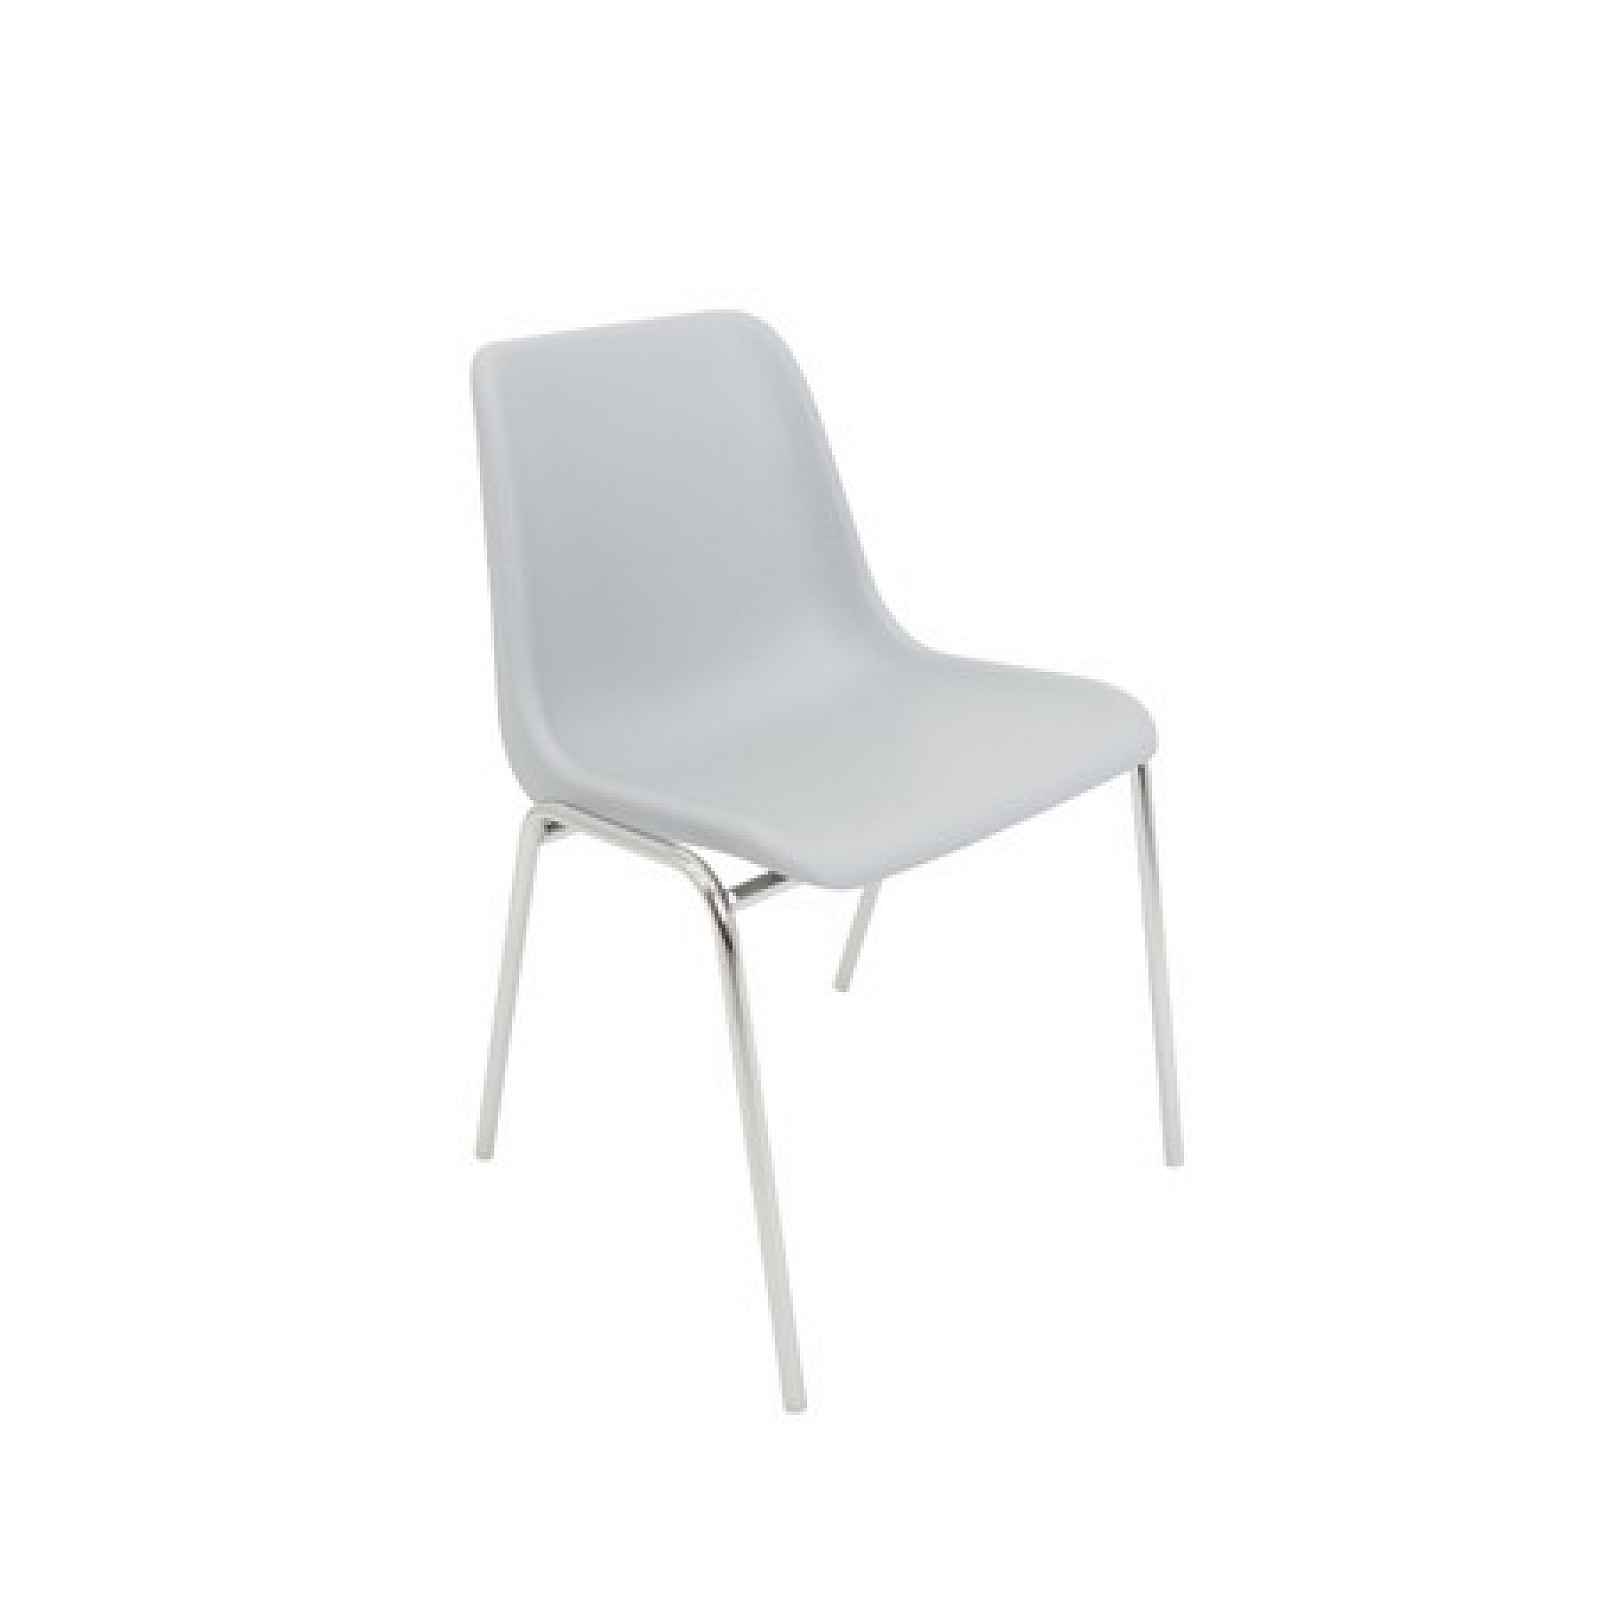 Konferenční židle Maxi chrom Světle šedá